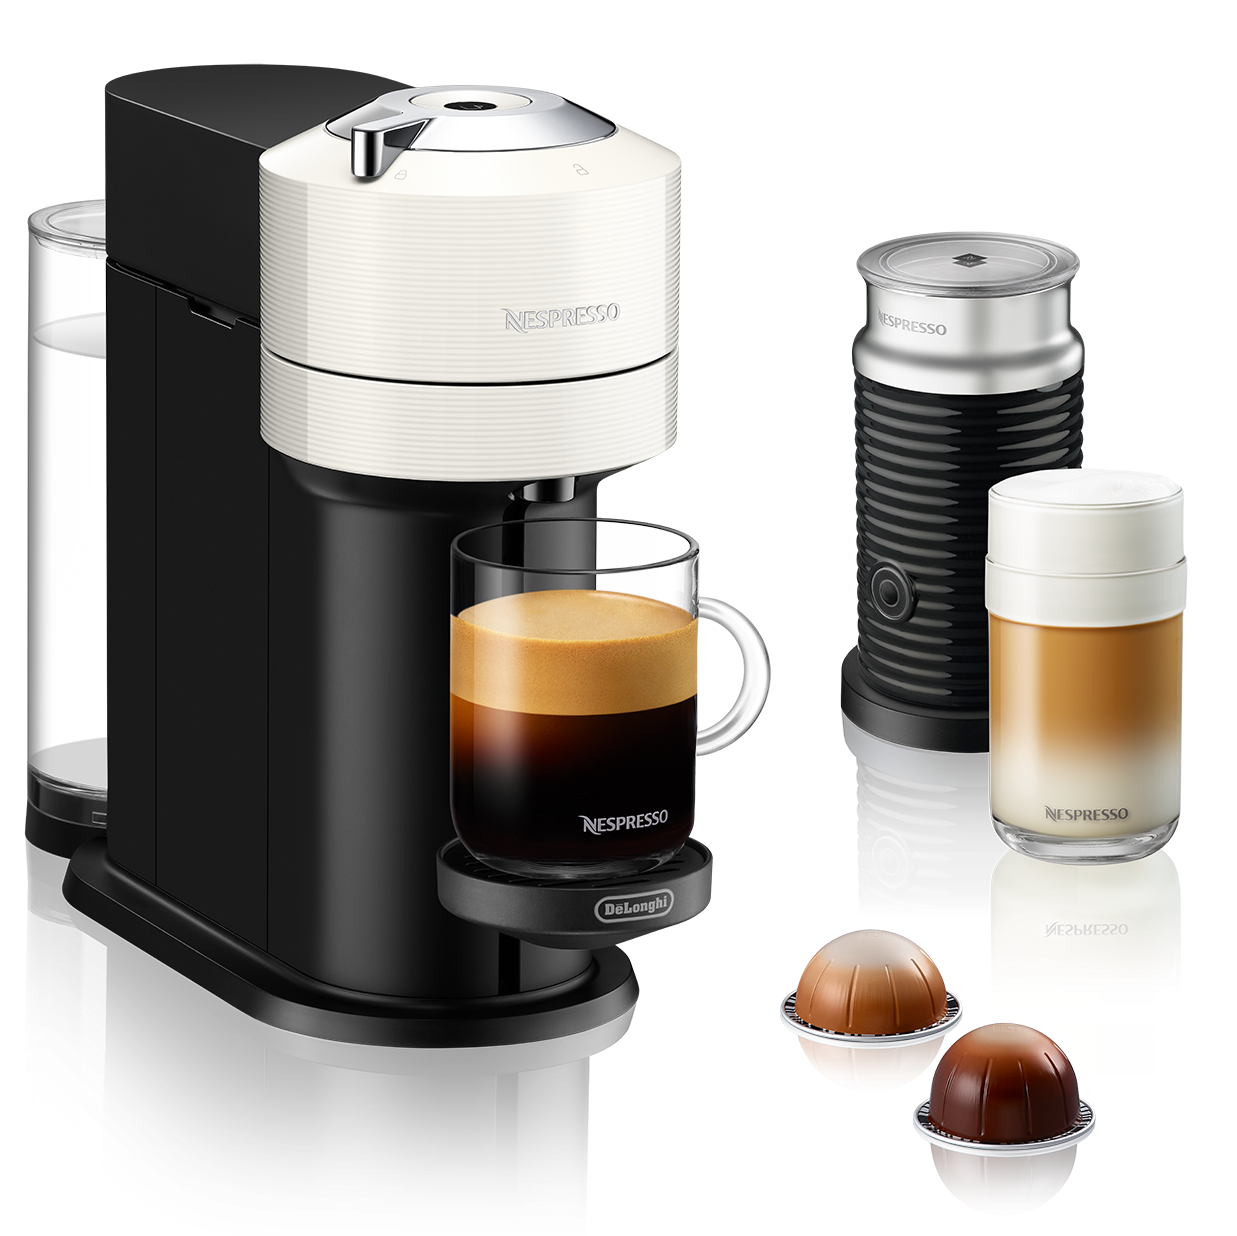 Nespresso Vertuo Coffee & Espresso Machine with Aeroccino Milk